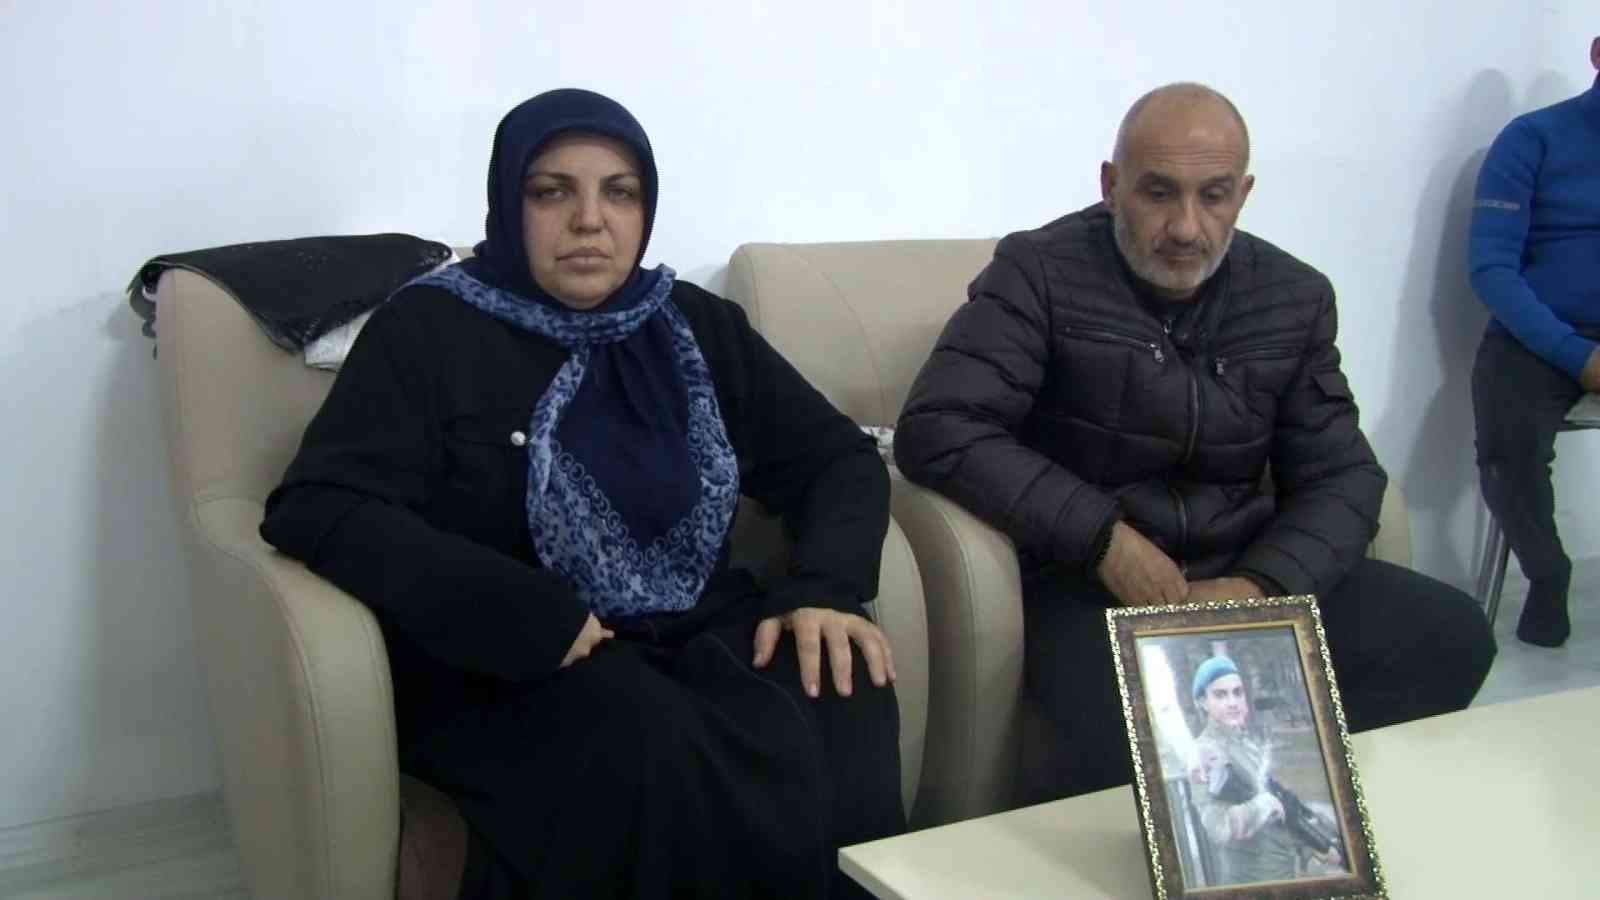 Gaziosmanpaşa’da öldürülen gencin acılı ailesi konuştu #istanbul